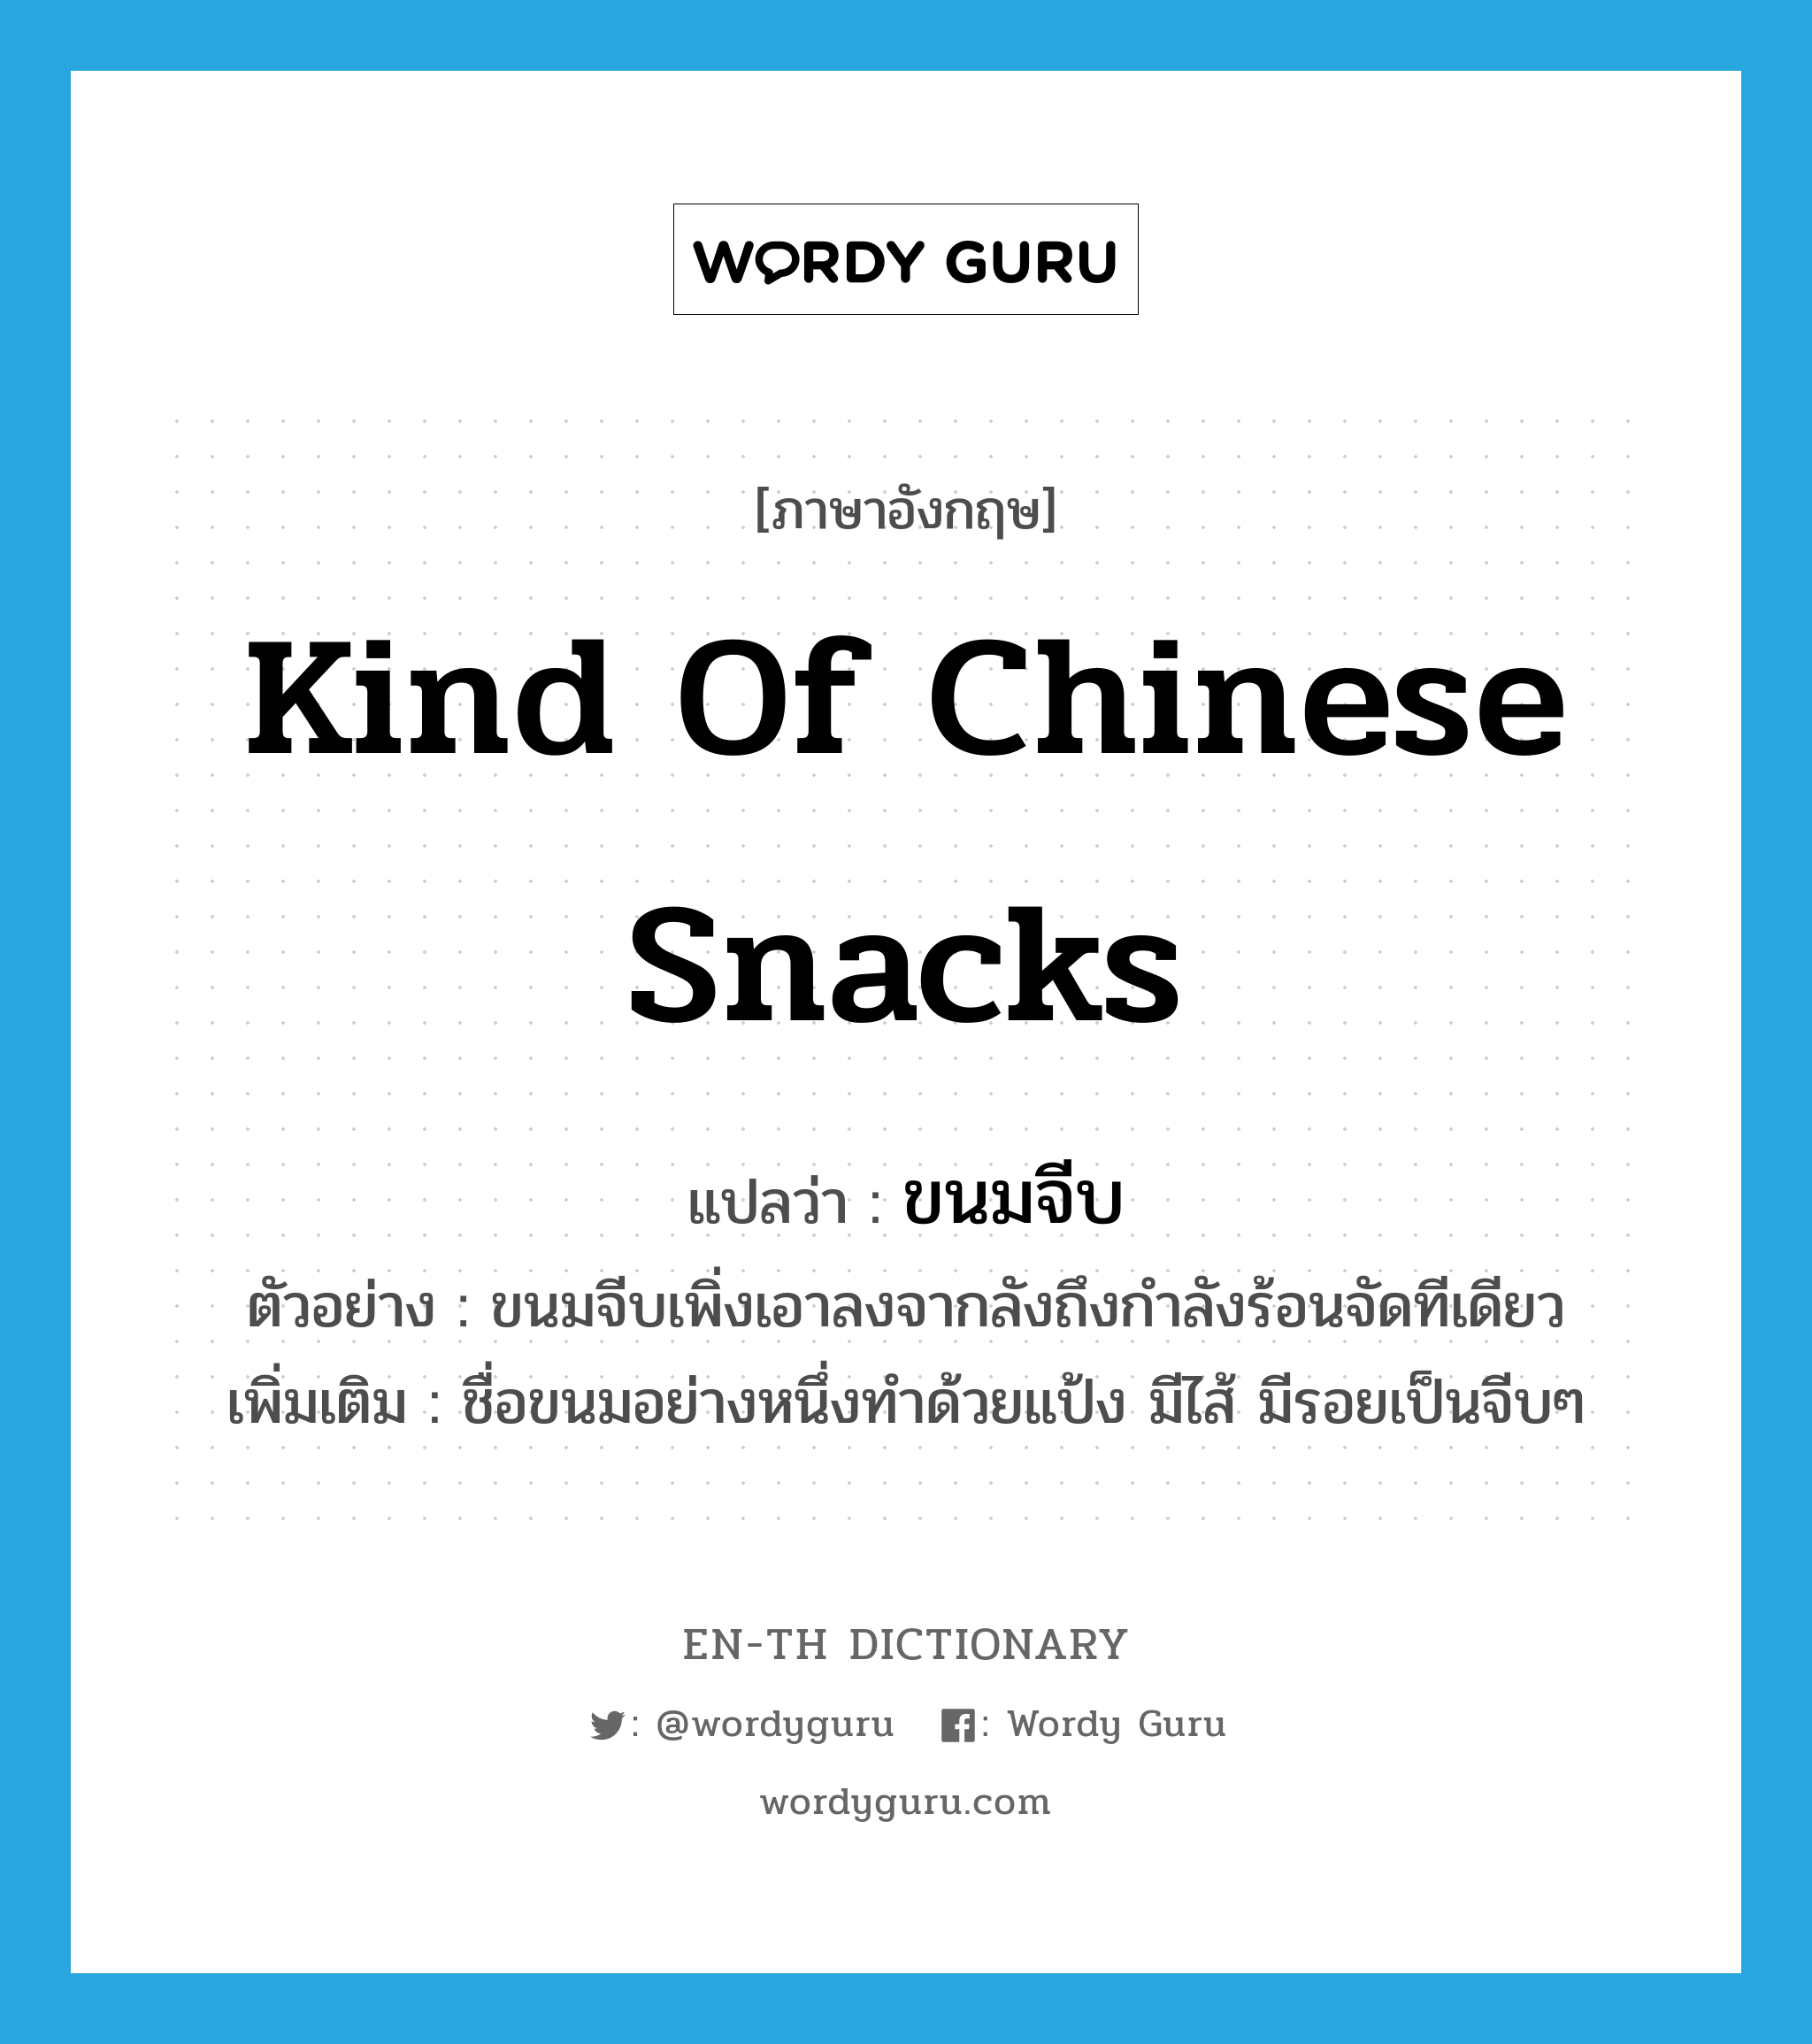 kind of Chinese snacks แปลว่า?, คำศัพท์ภาษาอังกฤษ kind of Chinese snacks แปลว่า ขนมจีบ ประเภท N ตัวอย่าง ขนมจีบเพิ่งเอาลงจากลังถึงกำลังร้อนจัดทีเดียว เพิ่มเติม ชื่อขนมอย่างหนึ่งทำด้วยแป้ง มีไส้ มีรอยเป็นจีบๆ หมวด N